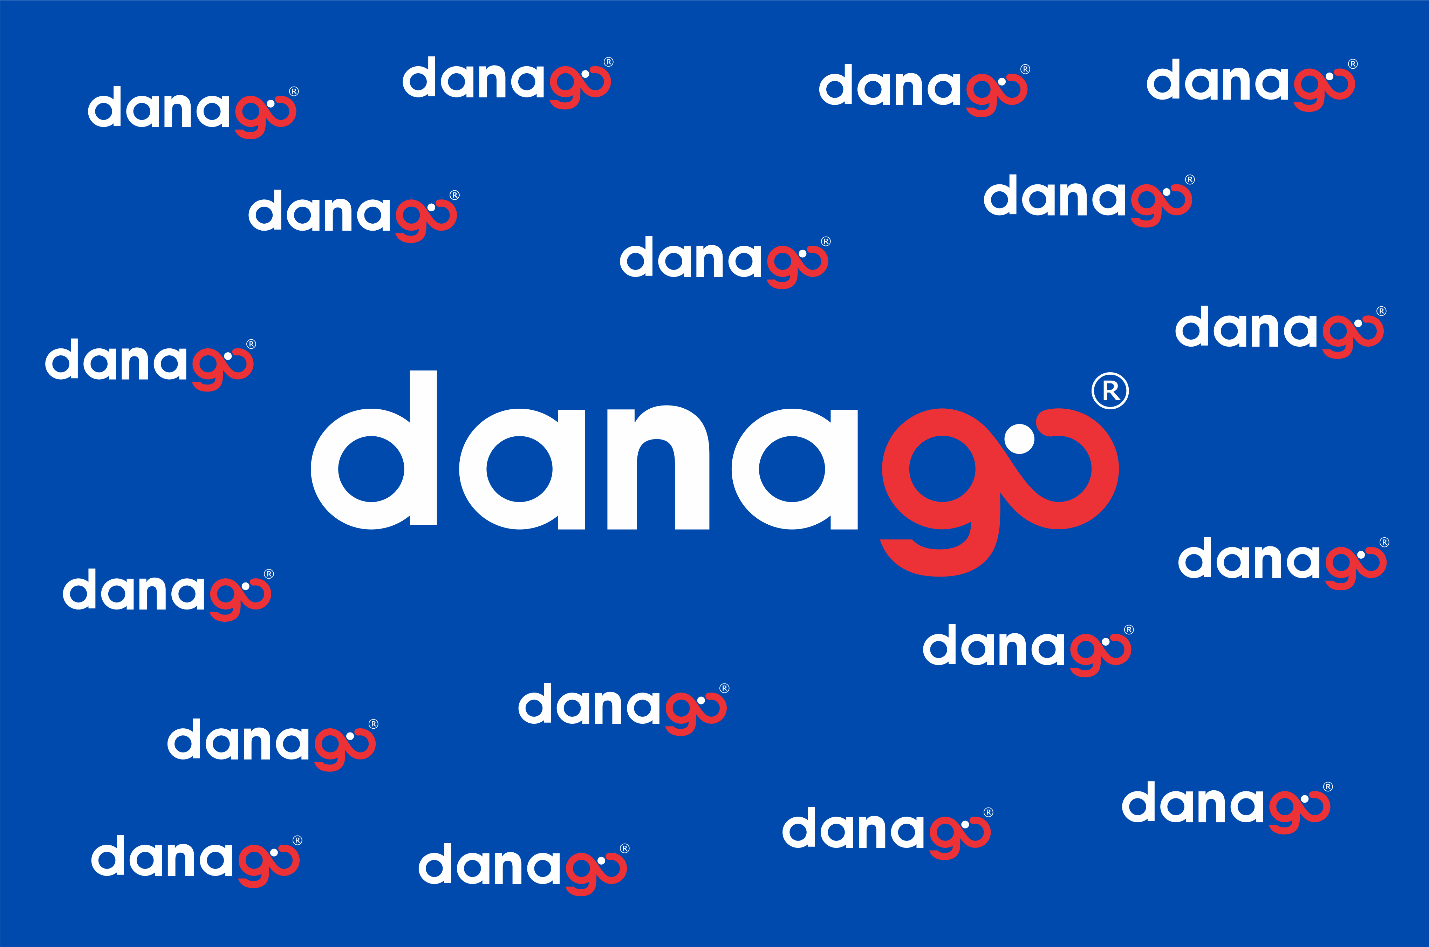 DANAGO là một trong những doanh nghiệp lữ hành tiêu biểu tại Đà Nẵng.